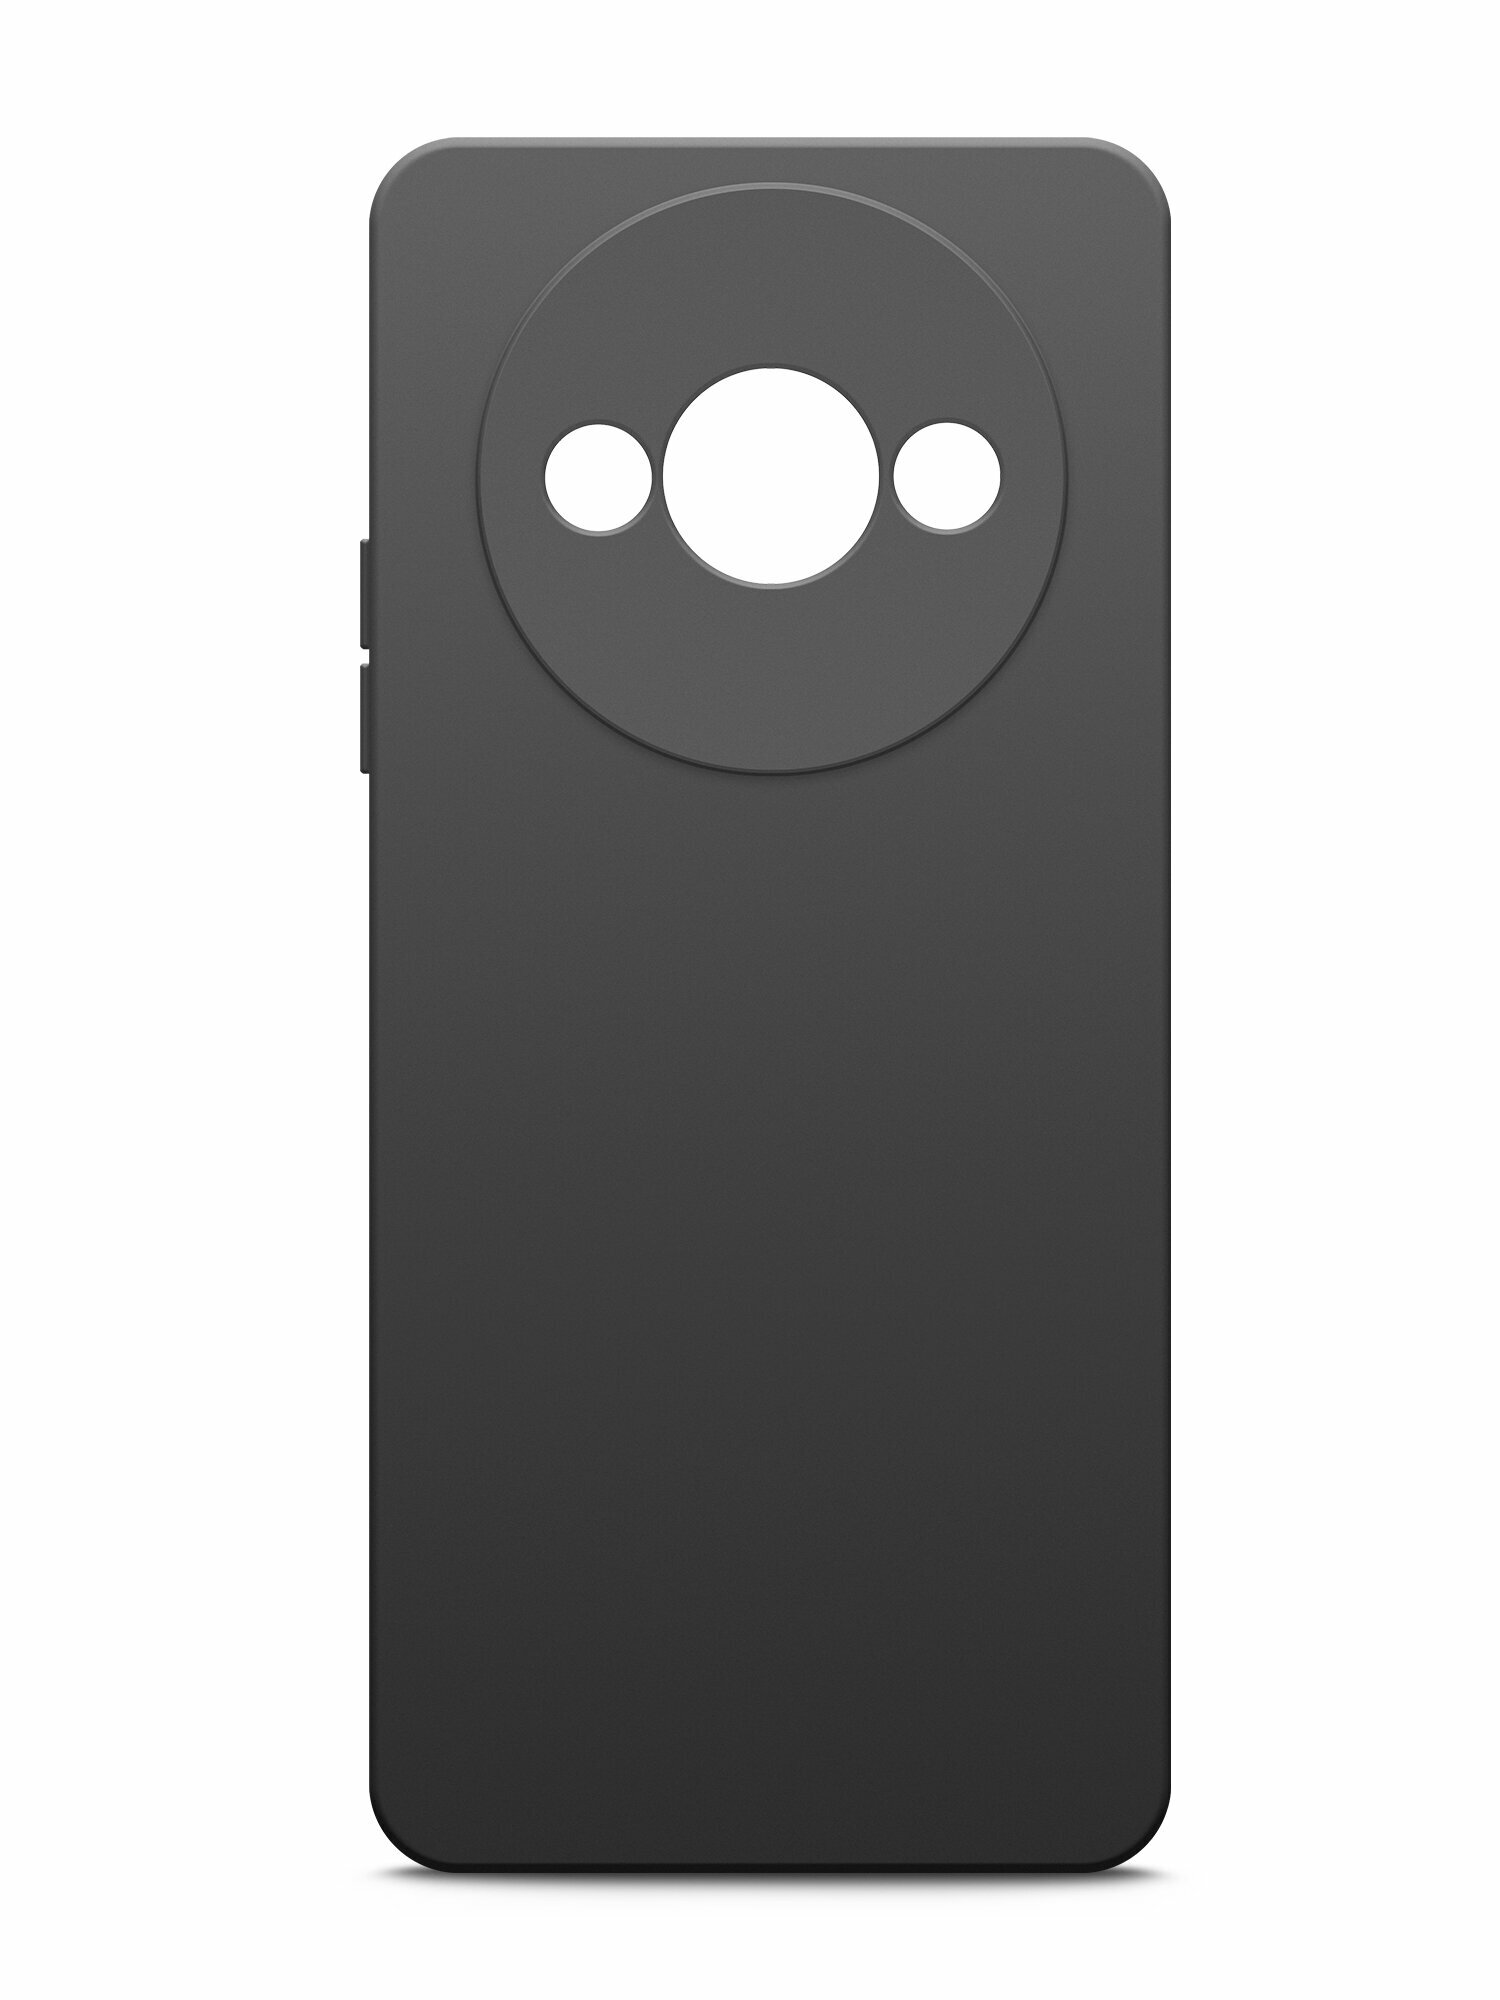 Чехол на Xiaomi Redmi A3 (Ксиоми Редми А3) черный силиконовый с защитной подкладкой из микрофибры Microfiber Case, Brozo